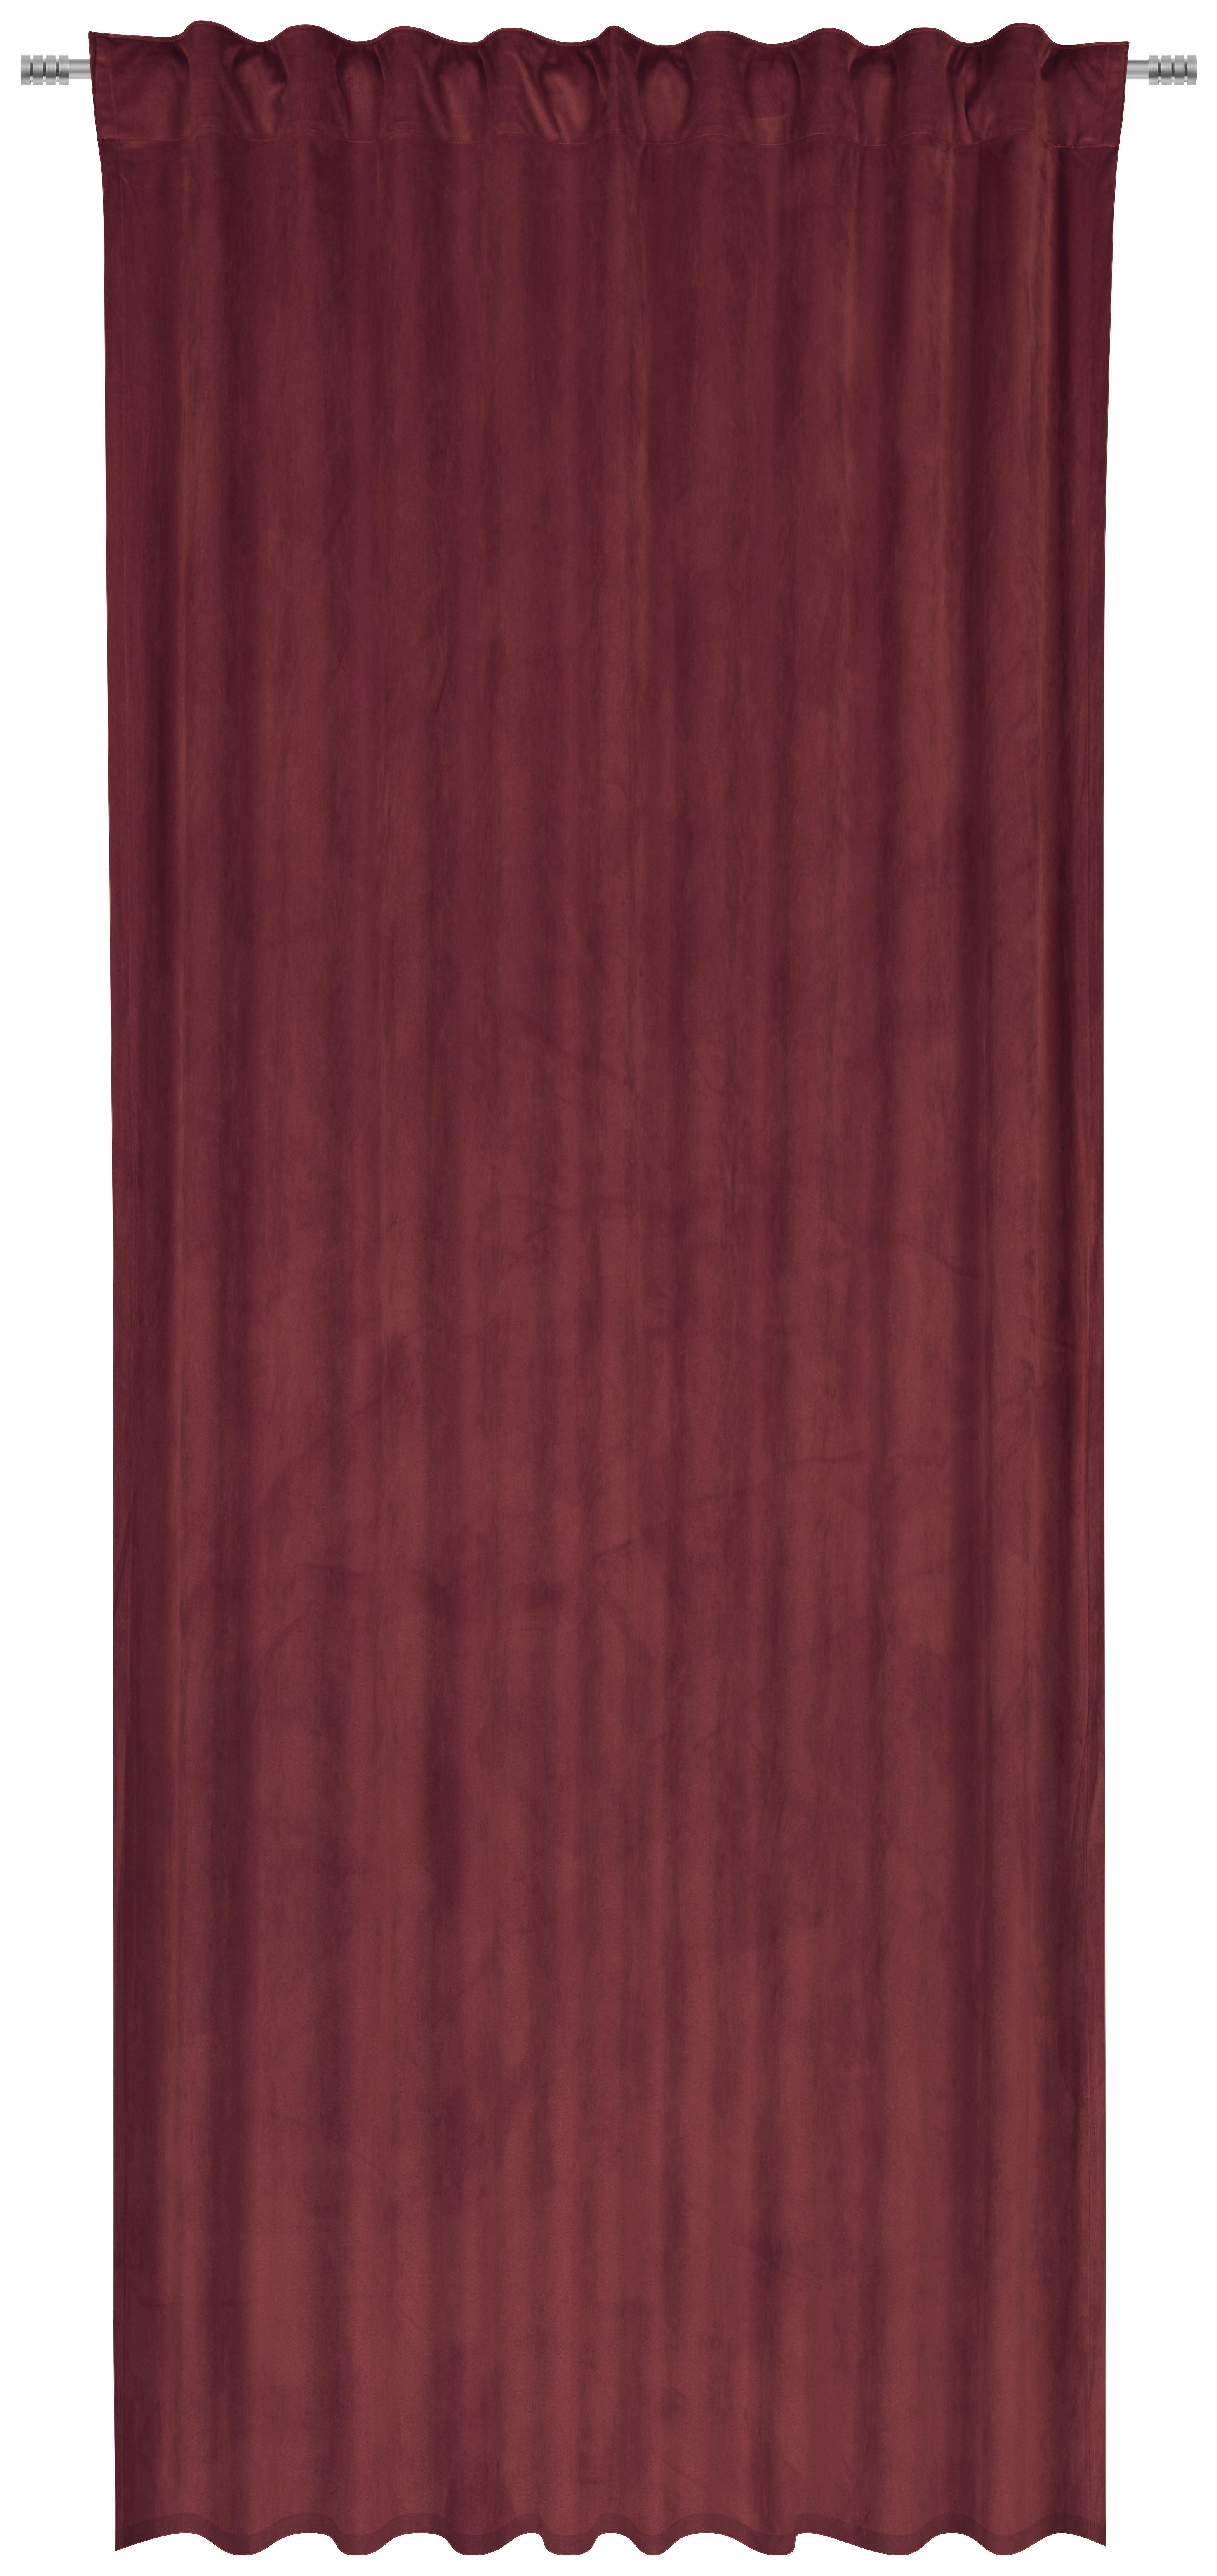 FERTIGVORHANG ZENATO blickdicht 135/245 cm   - Bordeaux, KONVENTIONELL, Textil (135/245cm) - Ambiente